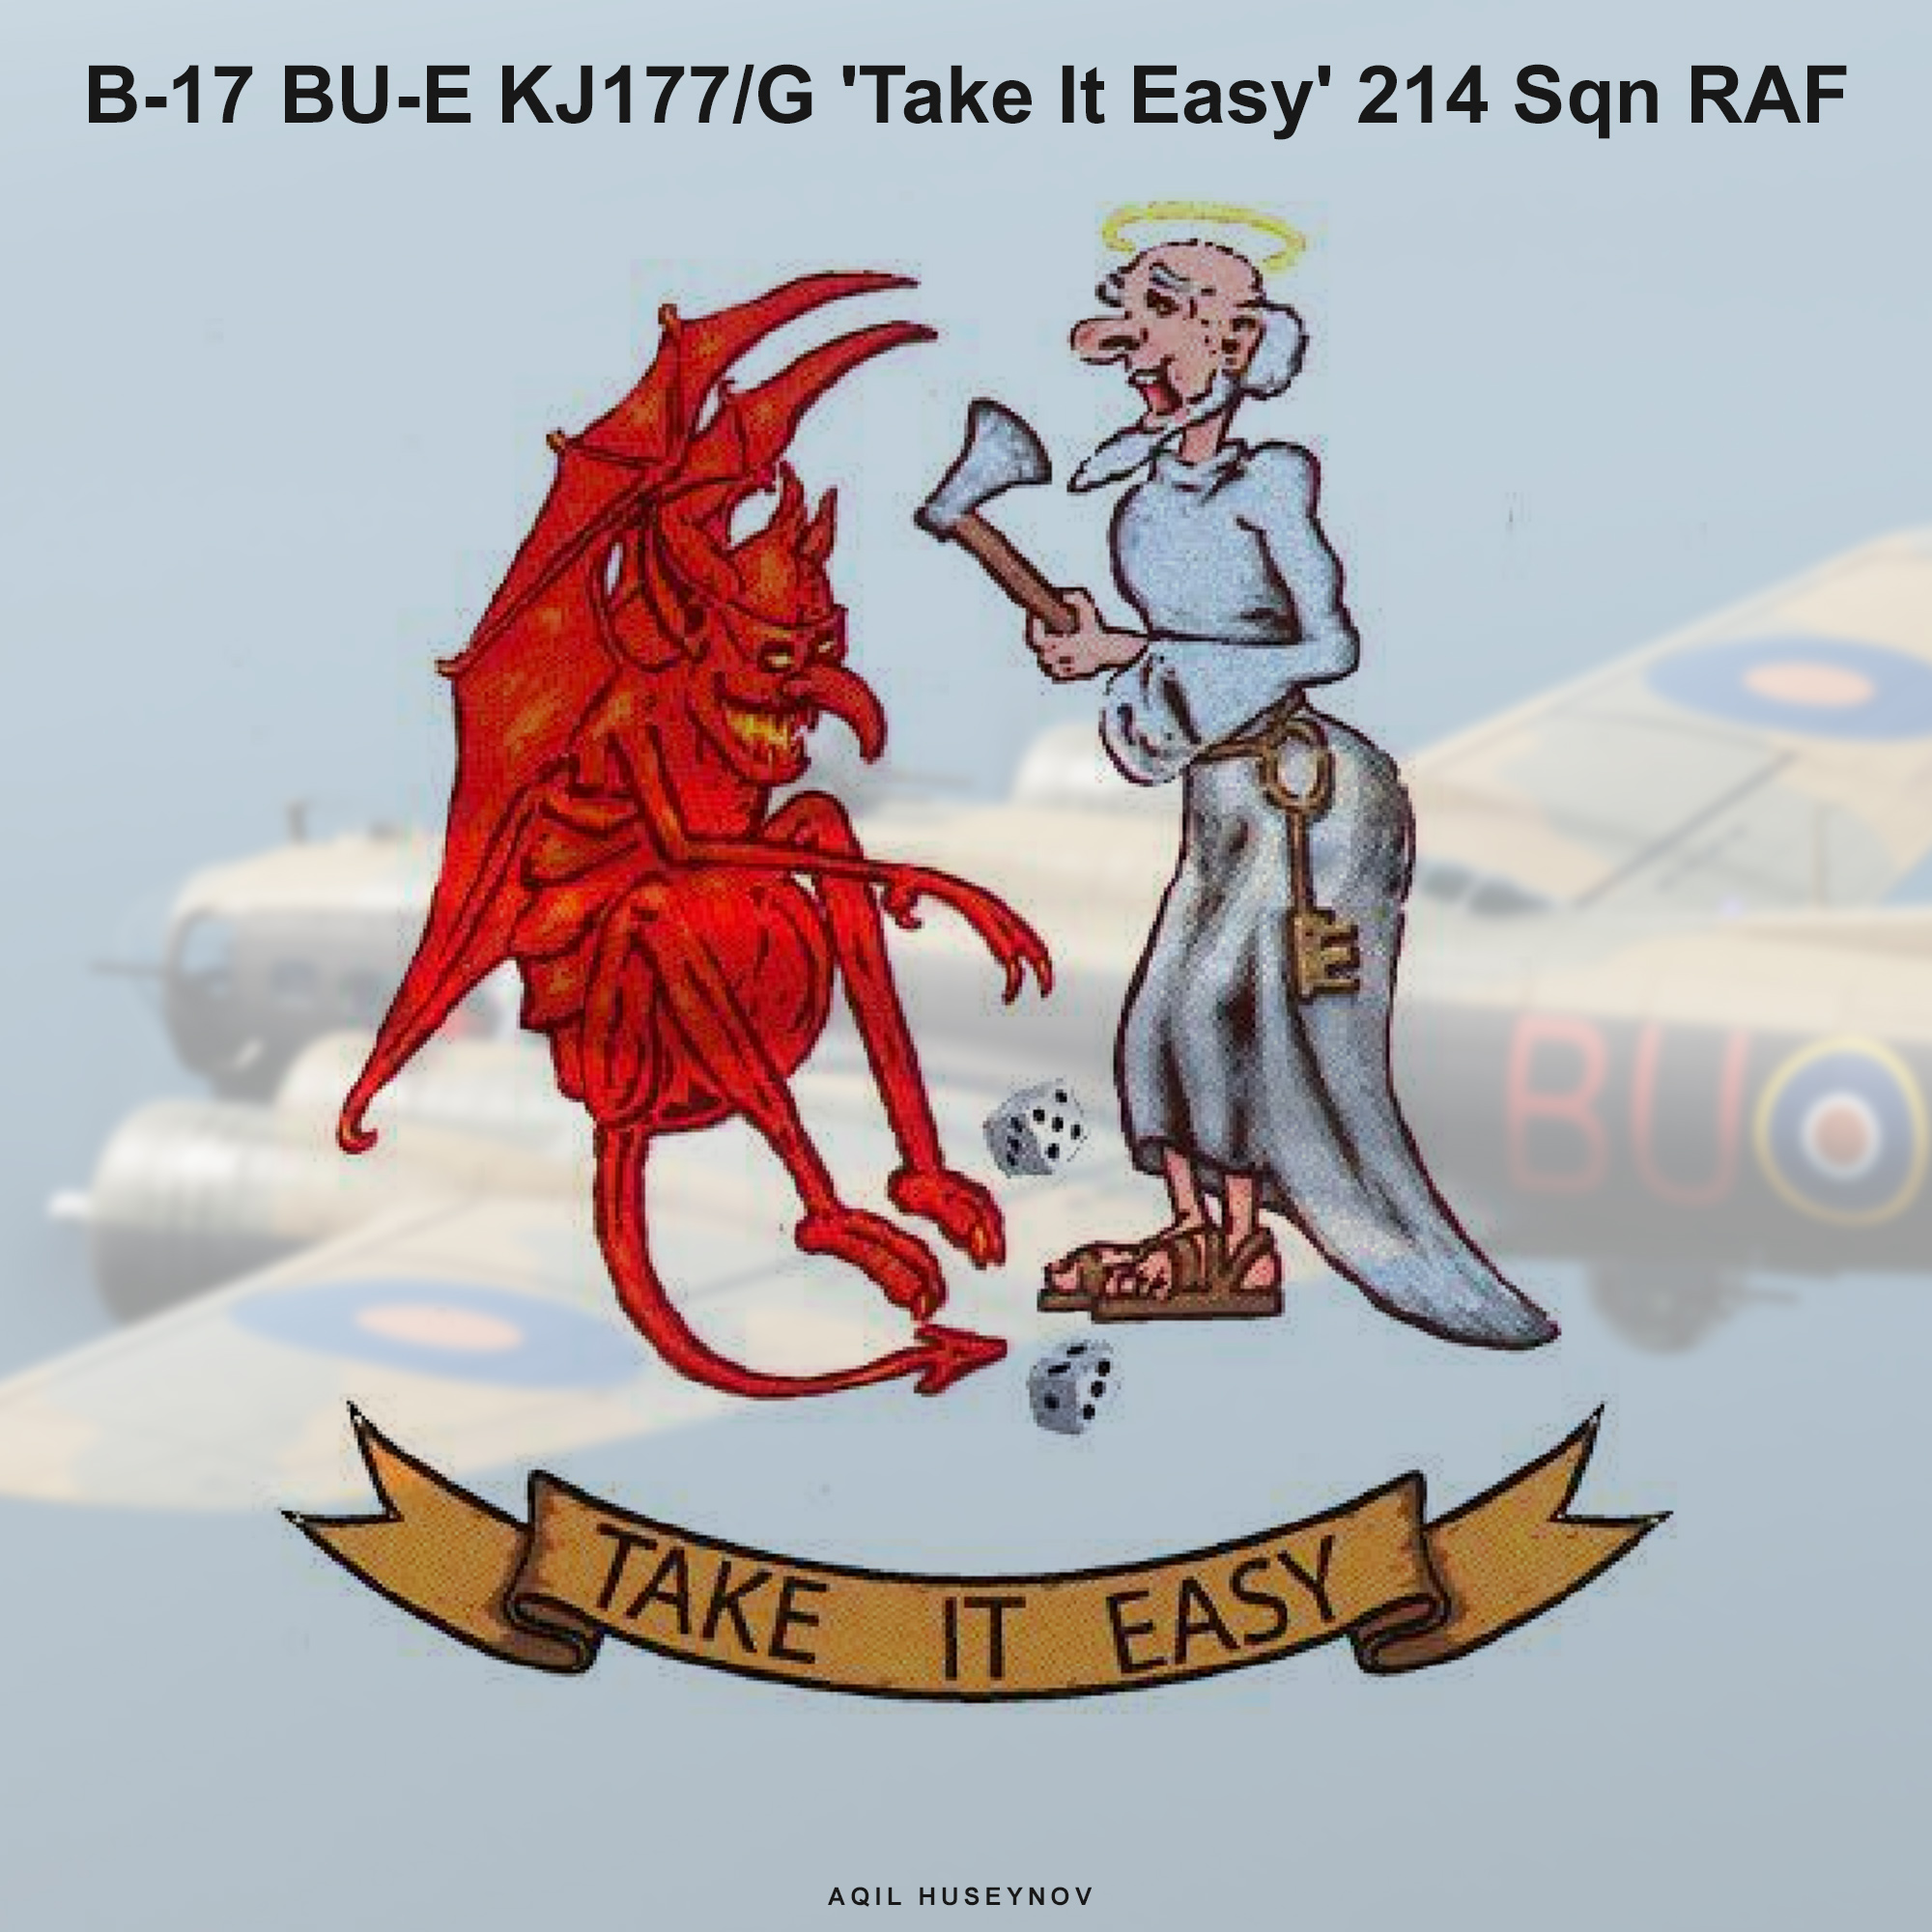 Boeing Flying Fortress Mk III (B-17G) 'Take It Easy' 214. Sqn RAF